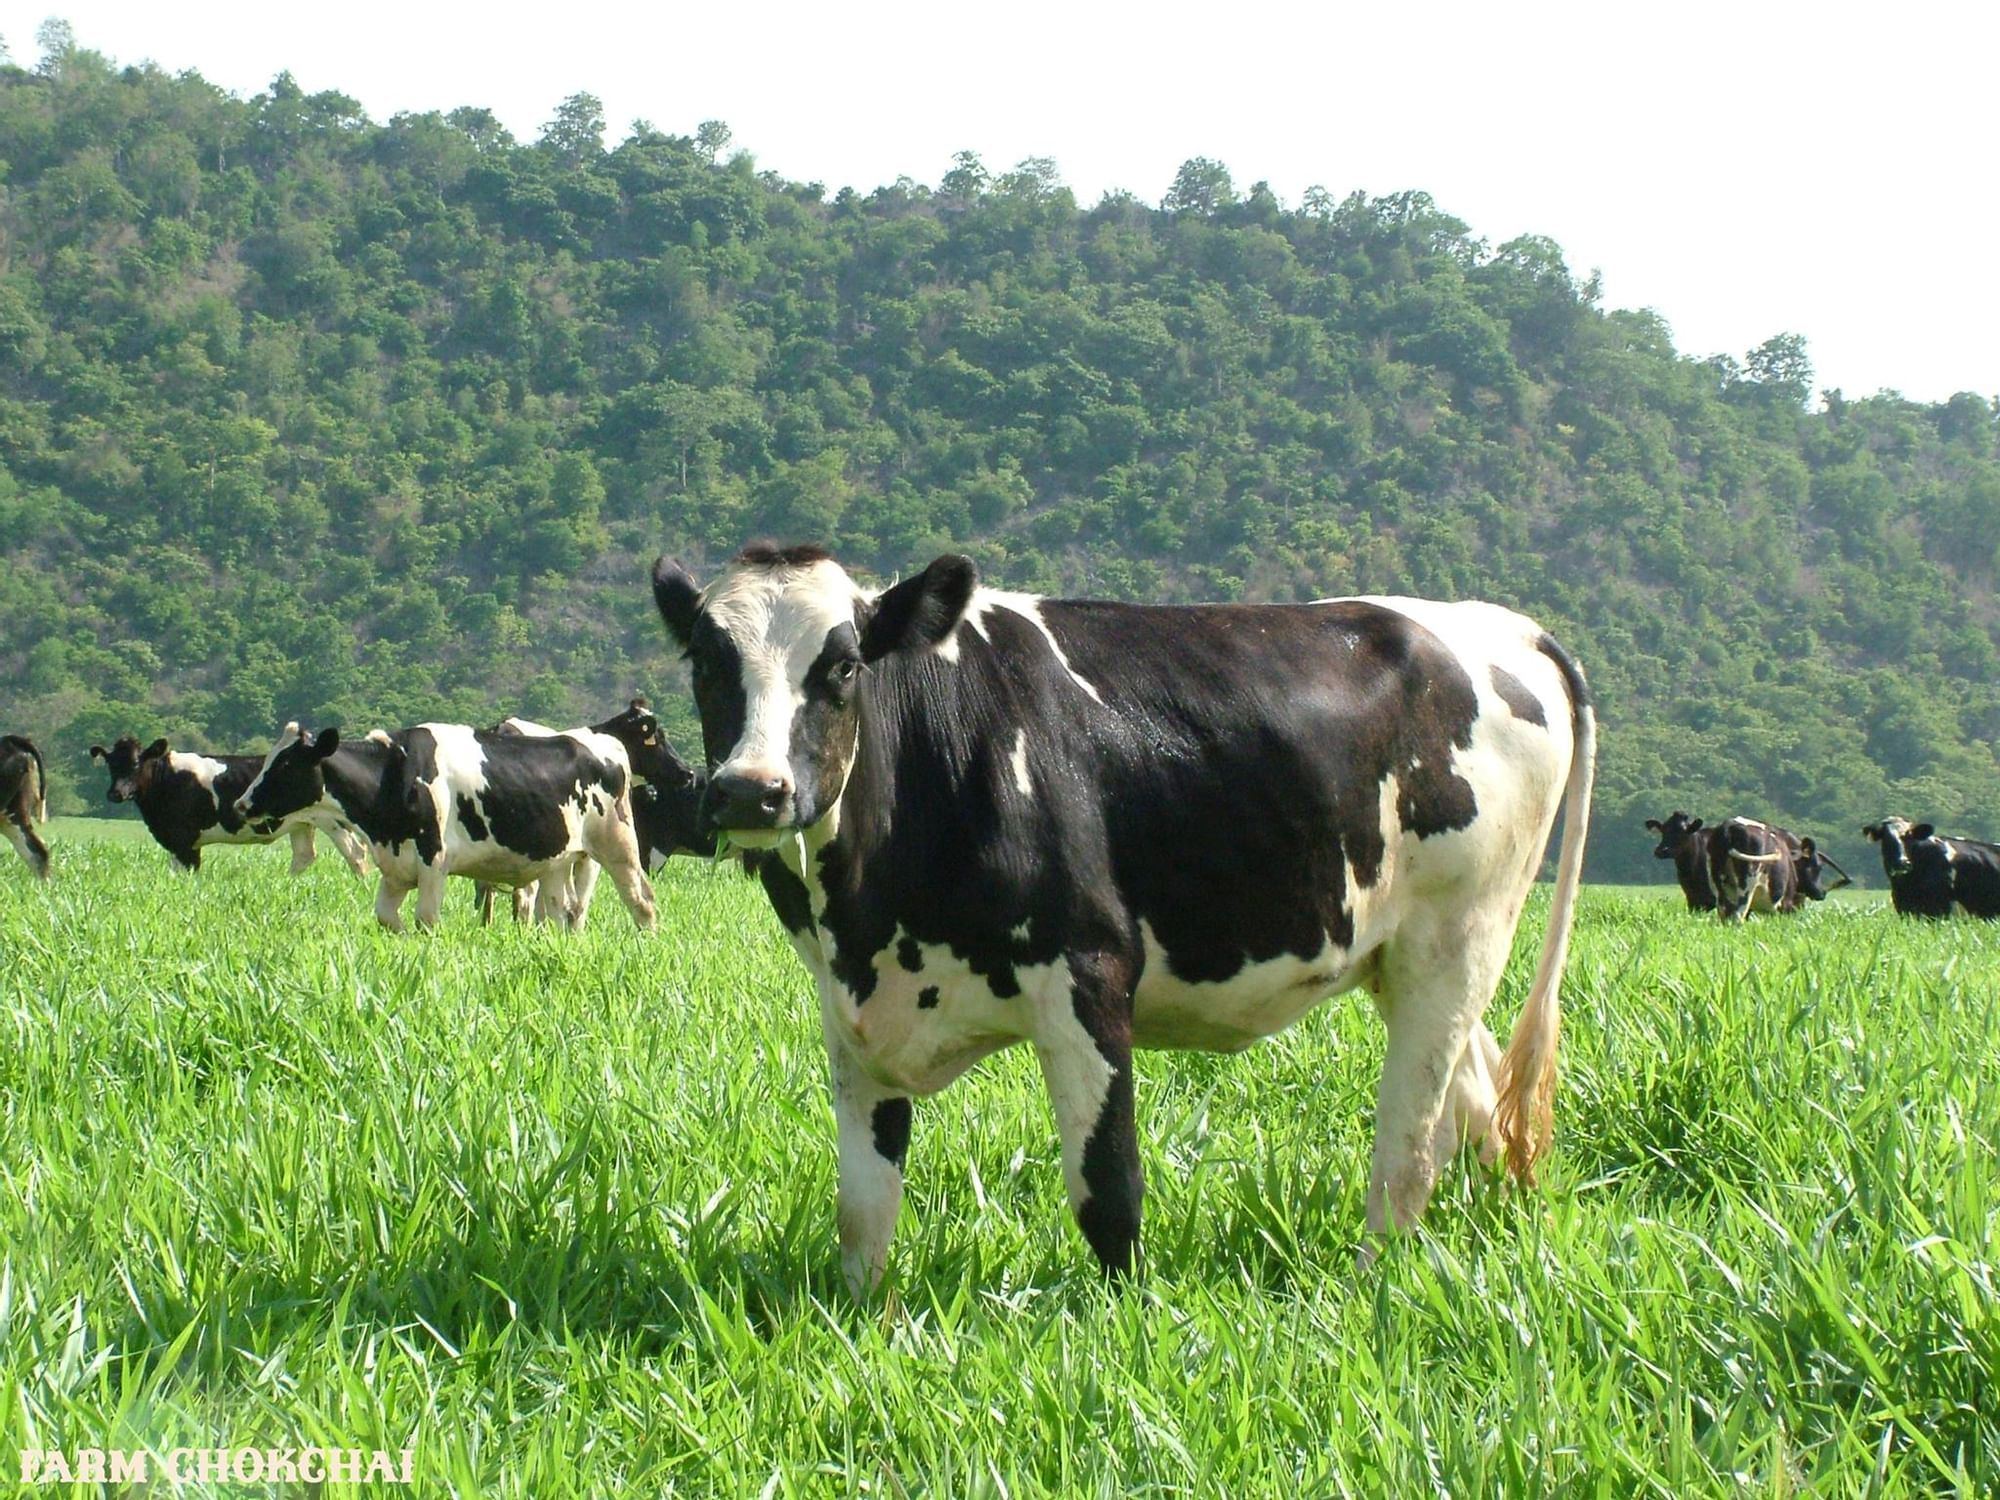 Cows in Chokchai Farm near U Hotels & Resorts